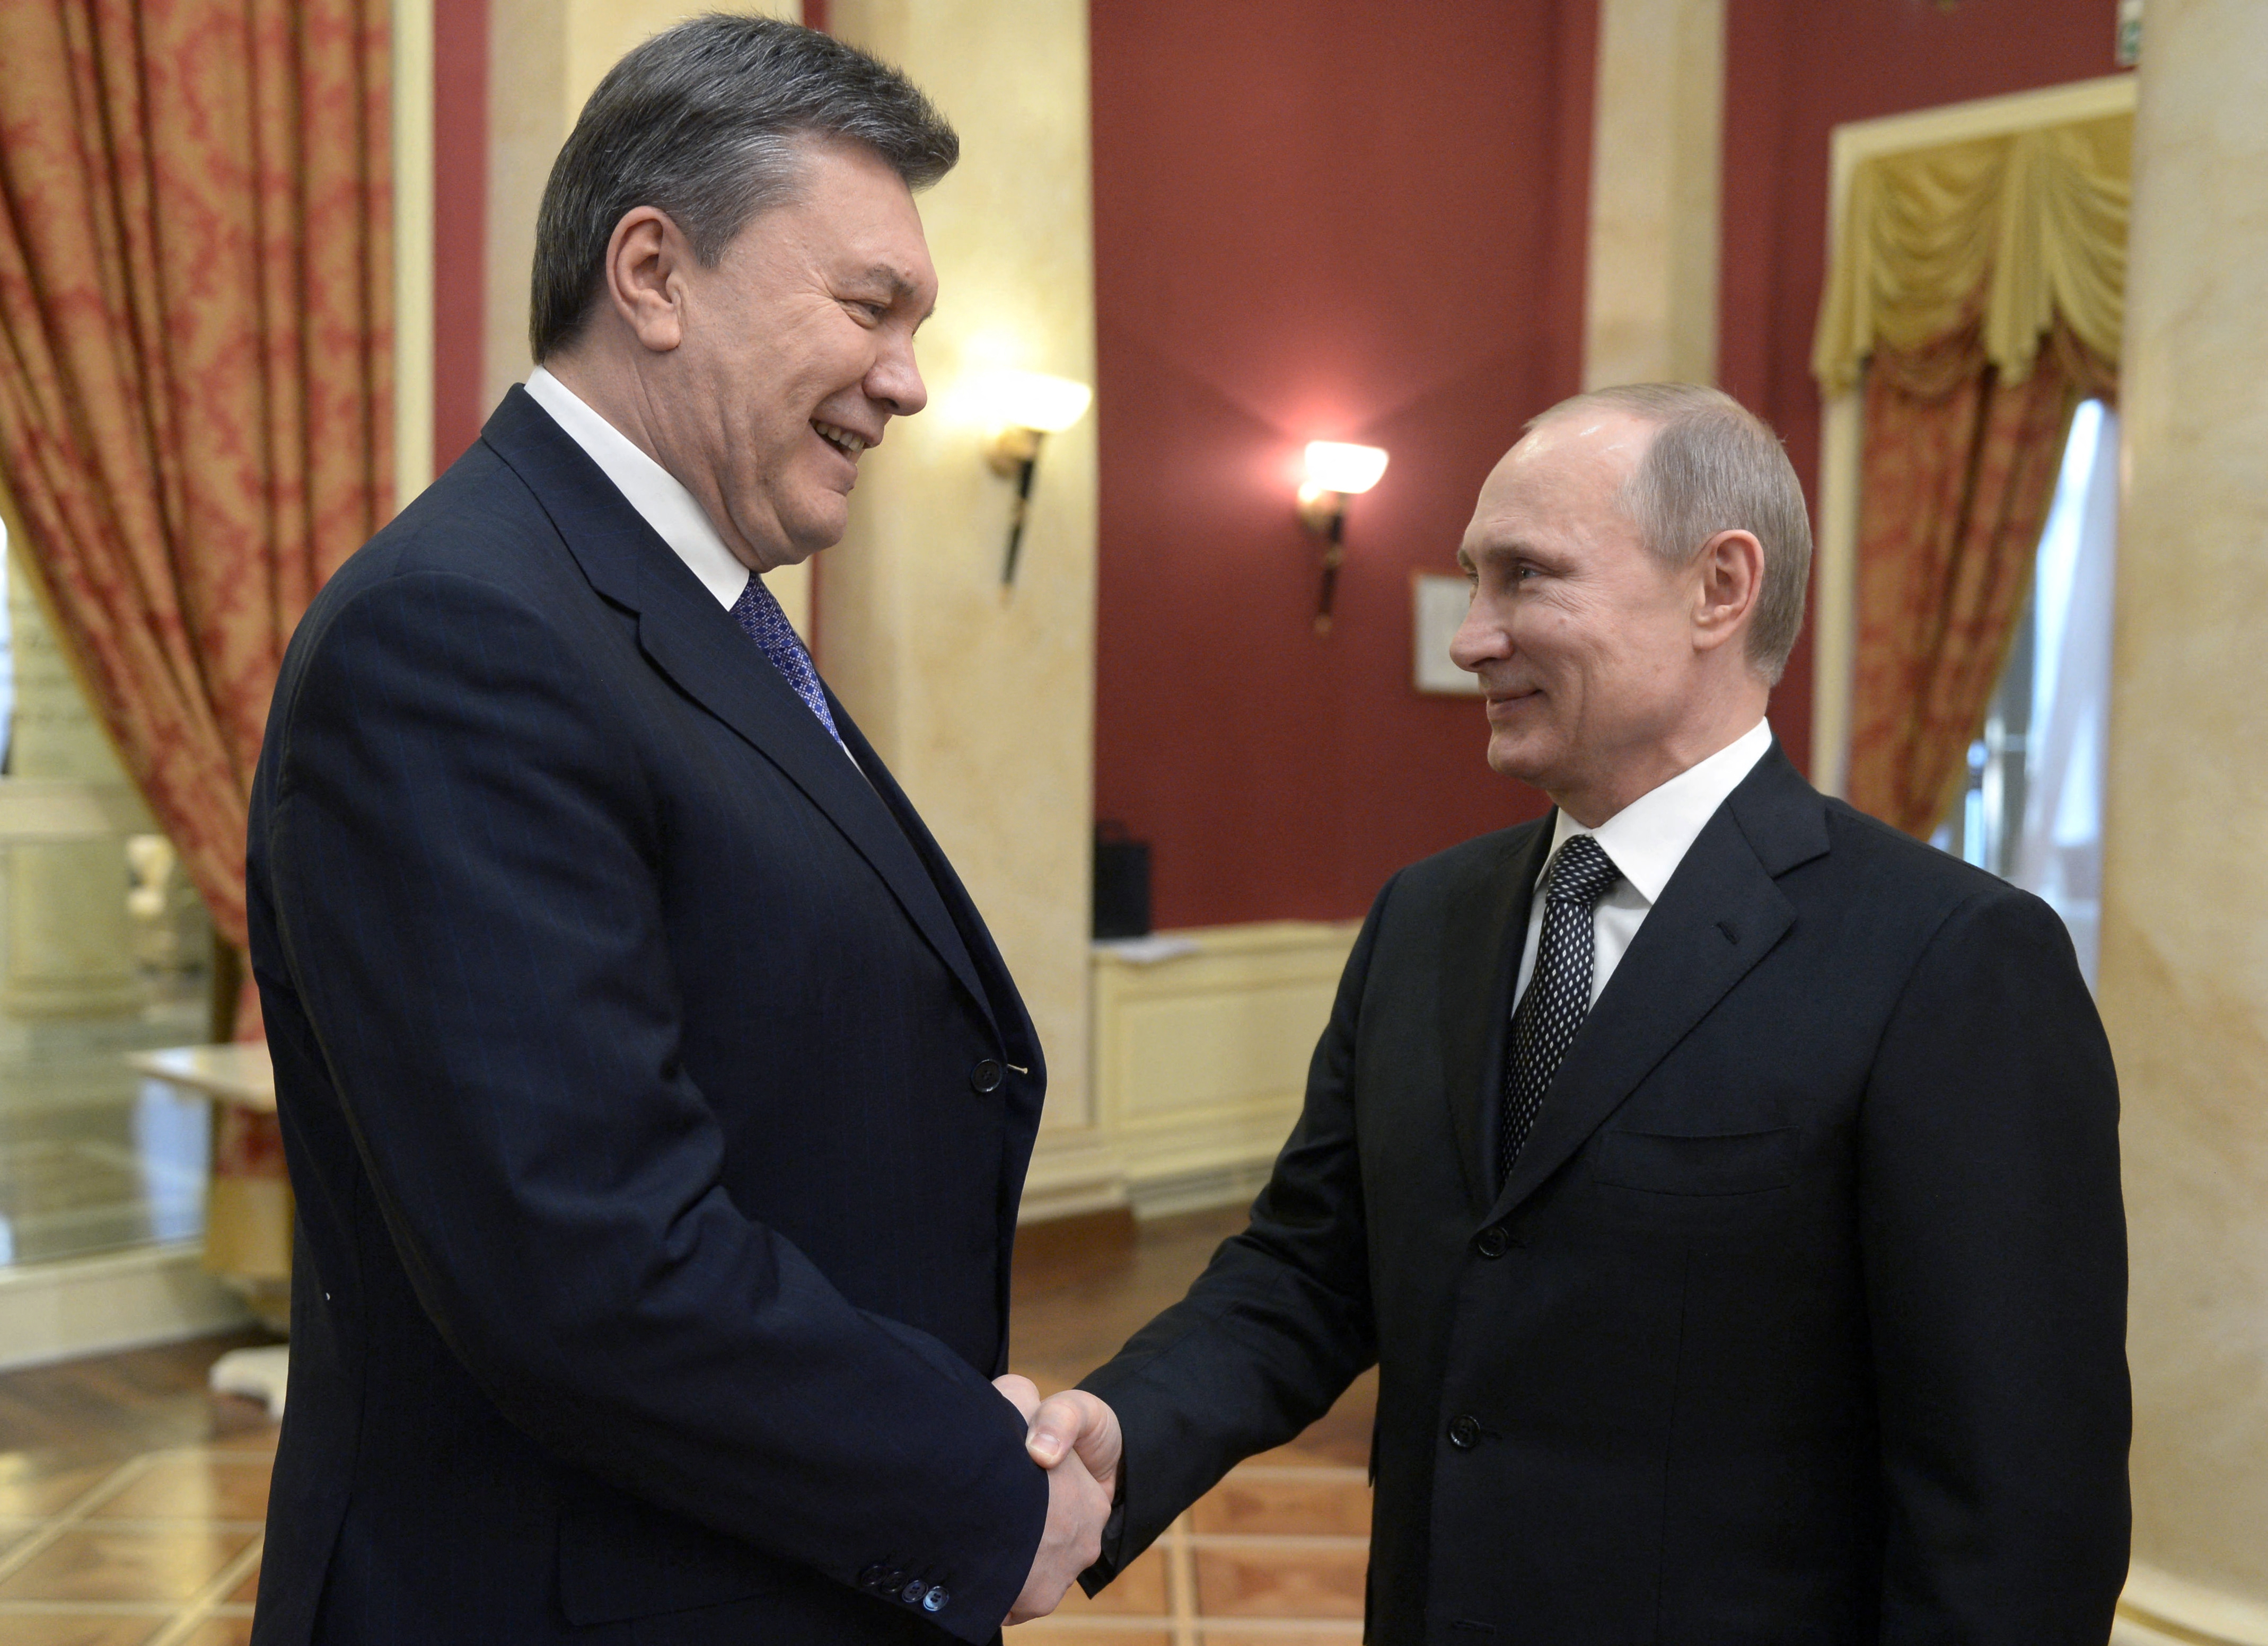 Az ukrán felderítés szerint az oroszok újra a 2014-ben elkergetett Viktor Janukovicsból akarnak elnököt csinálni